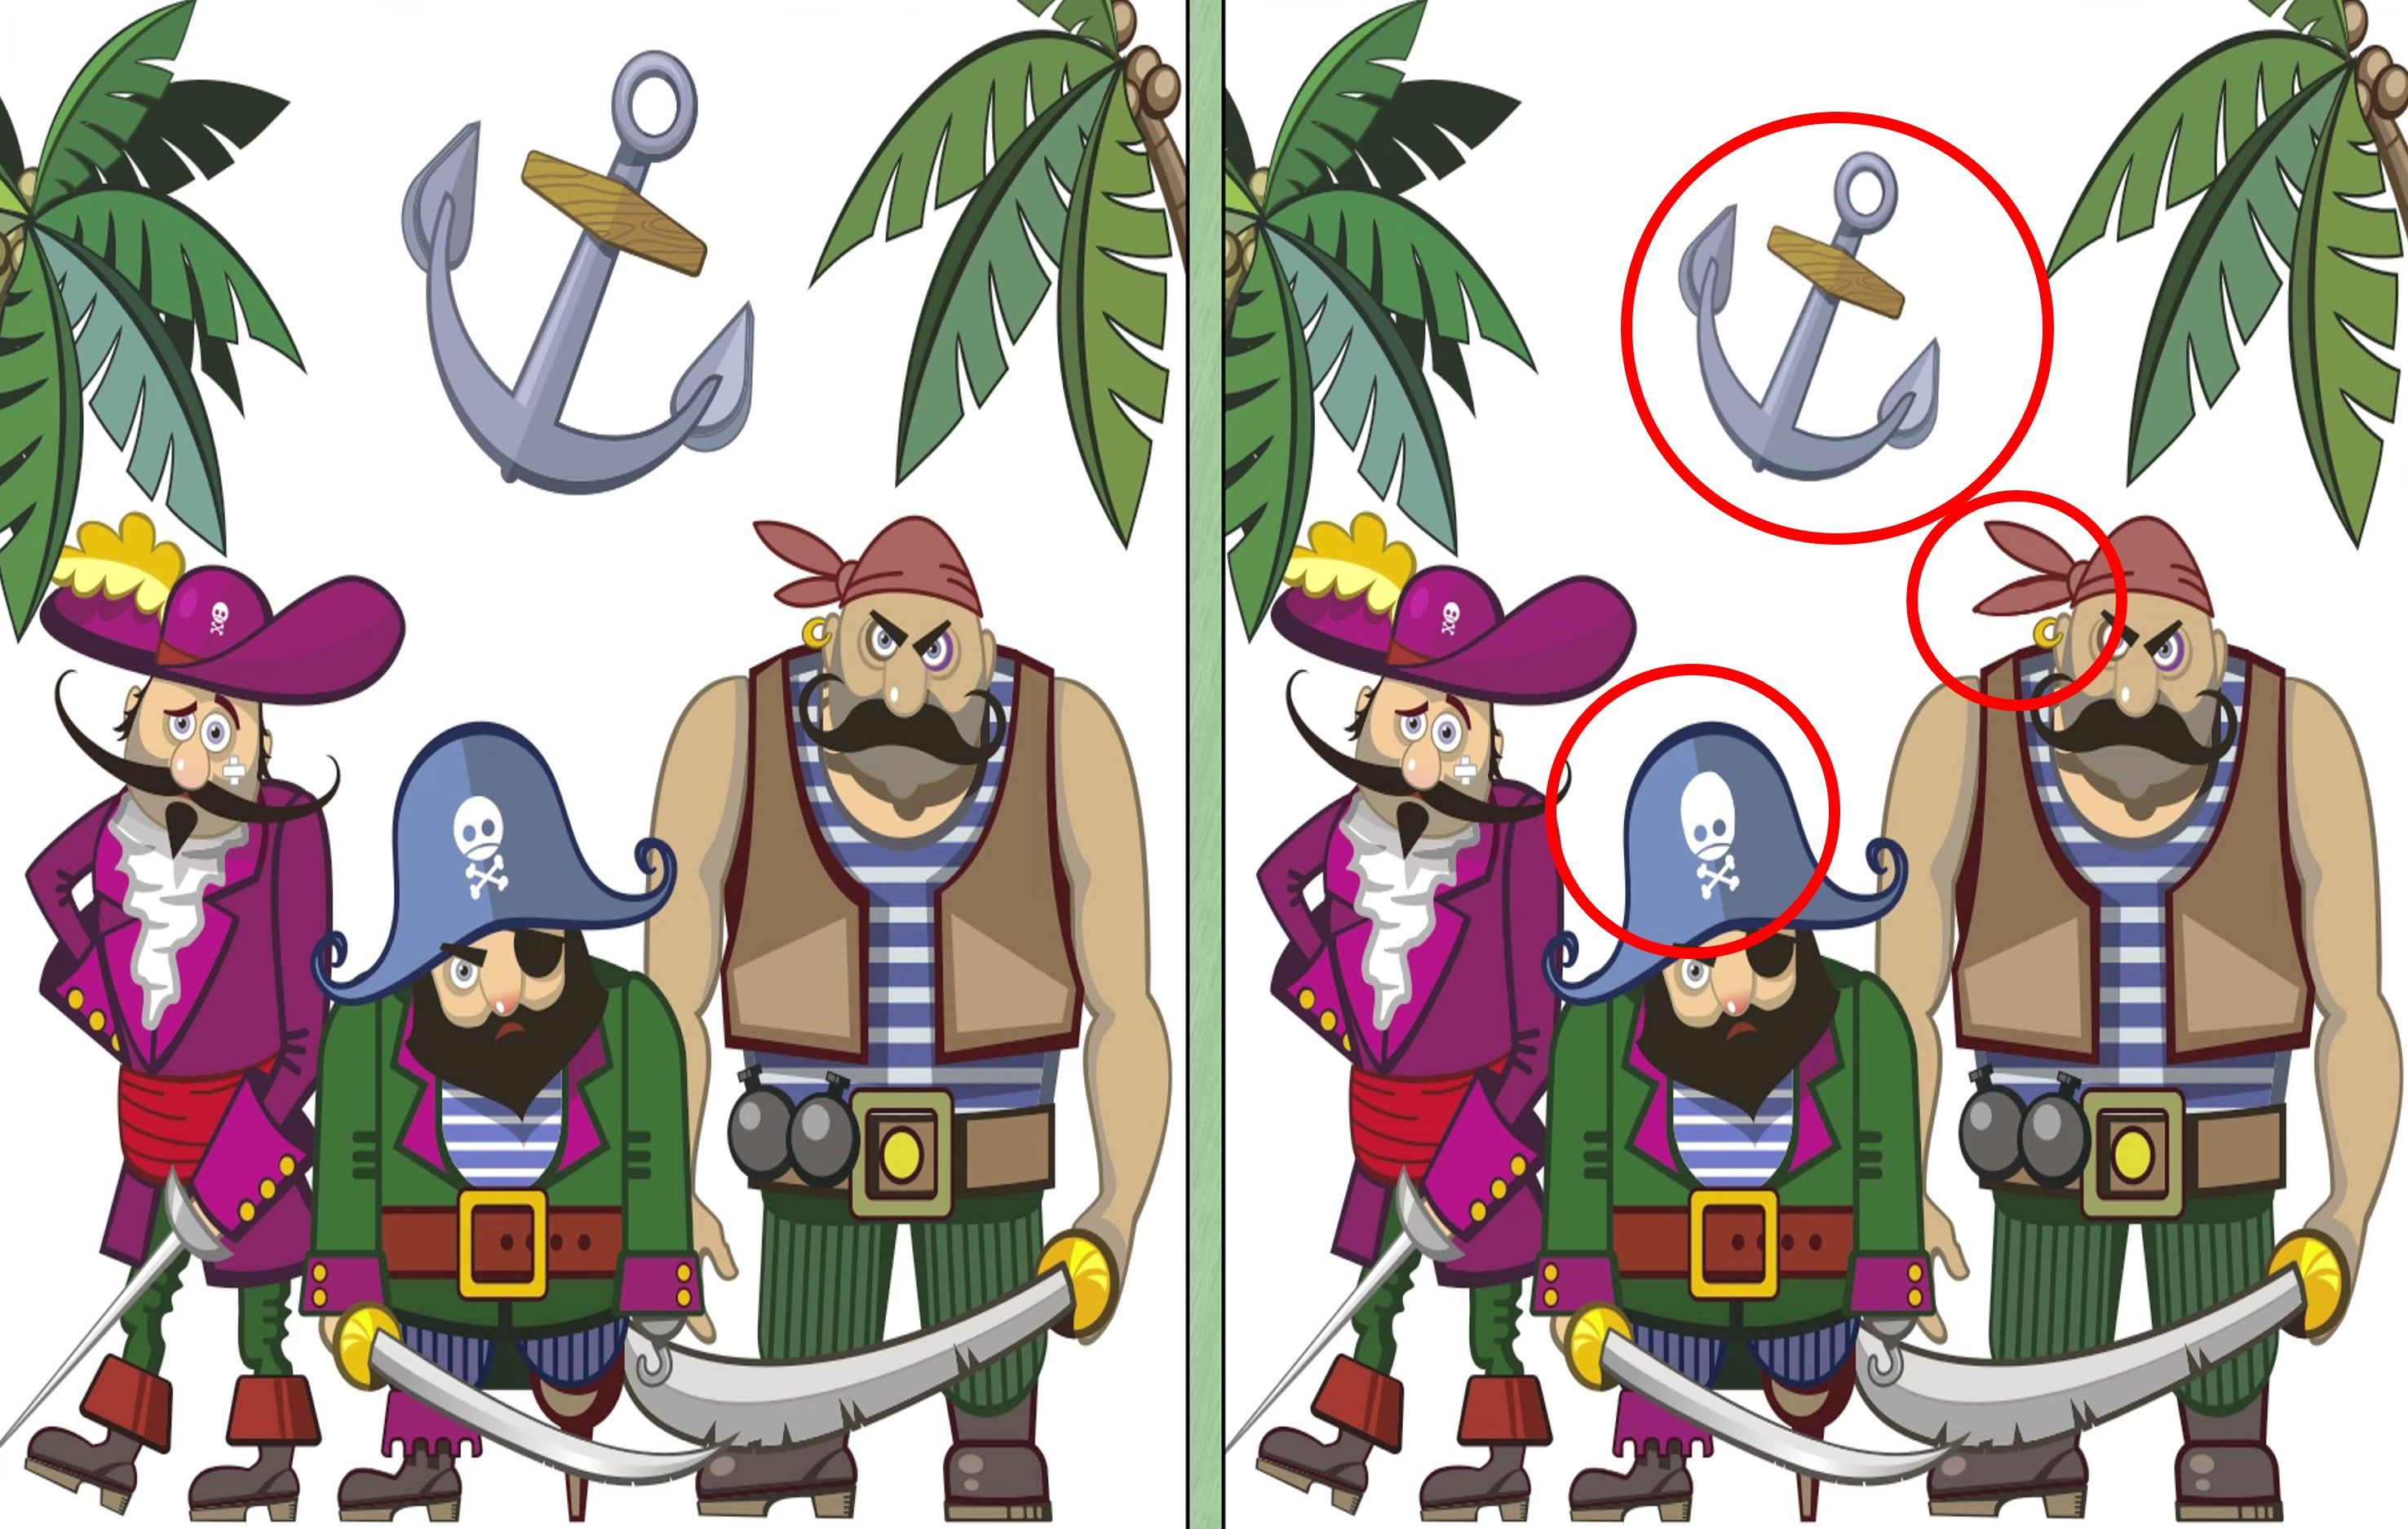 Temukan tiga perbedaan pada gambar bajak laut ini. 